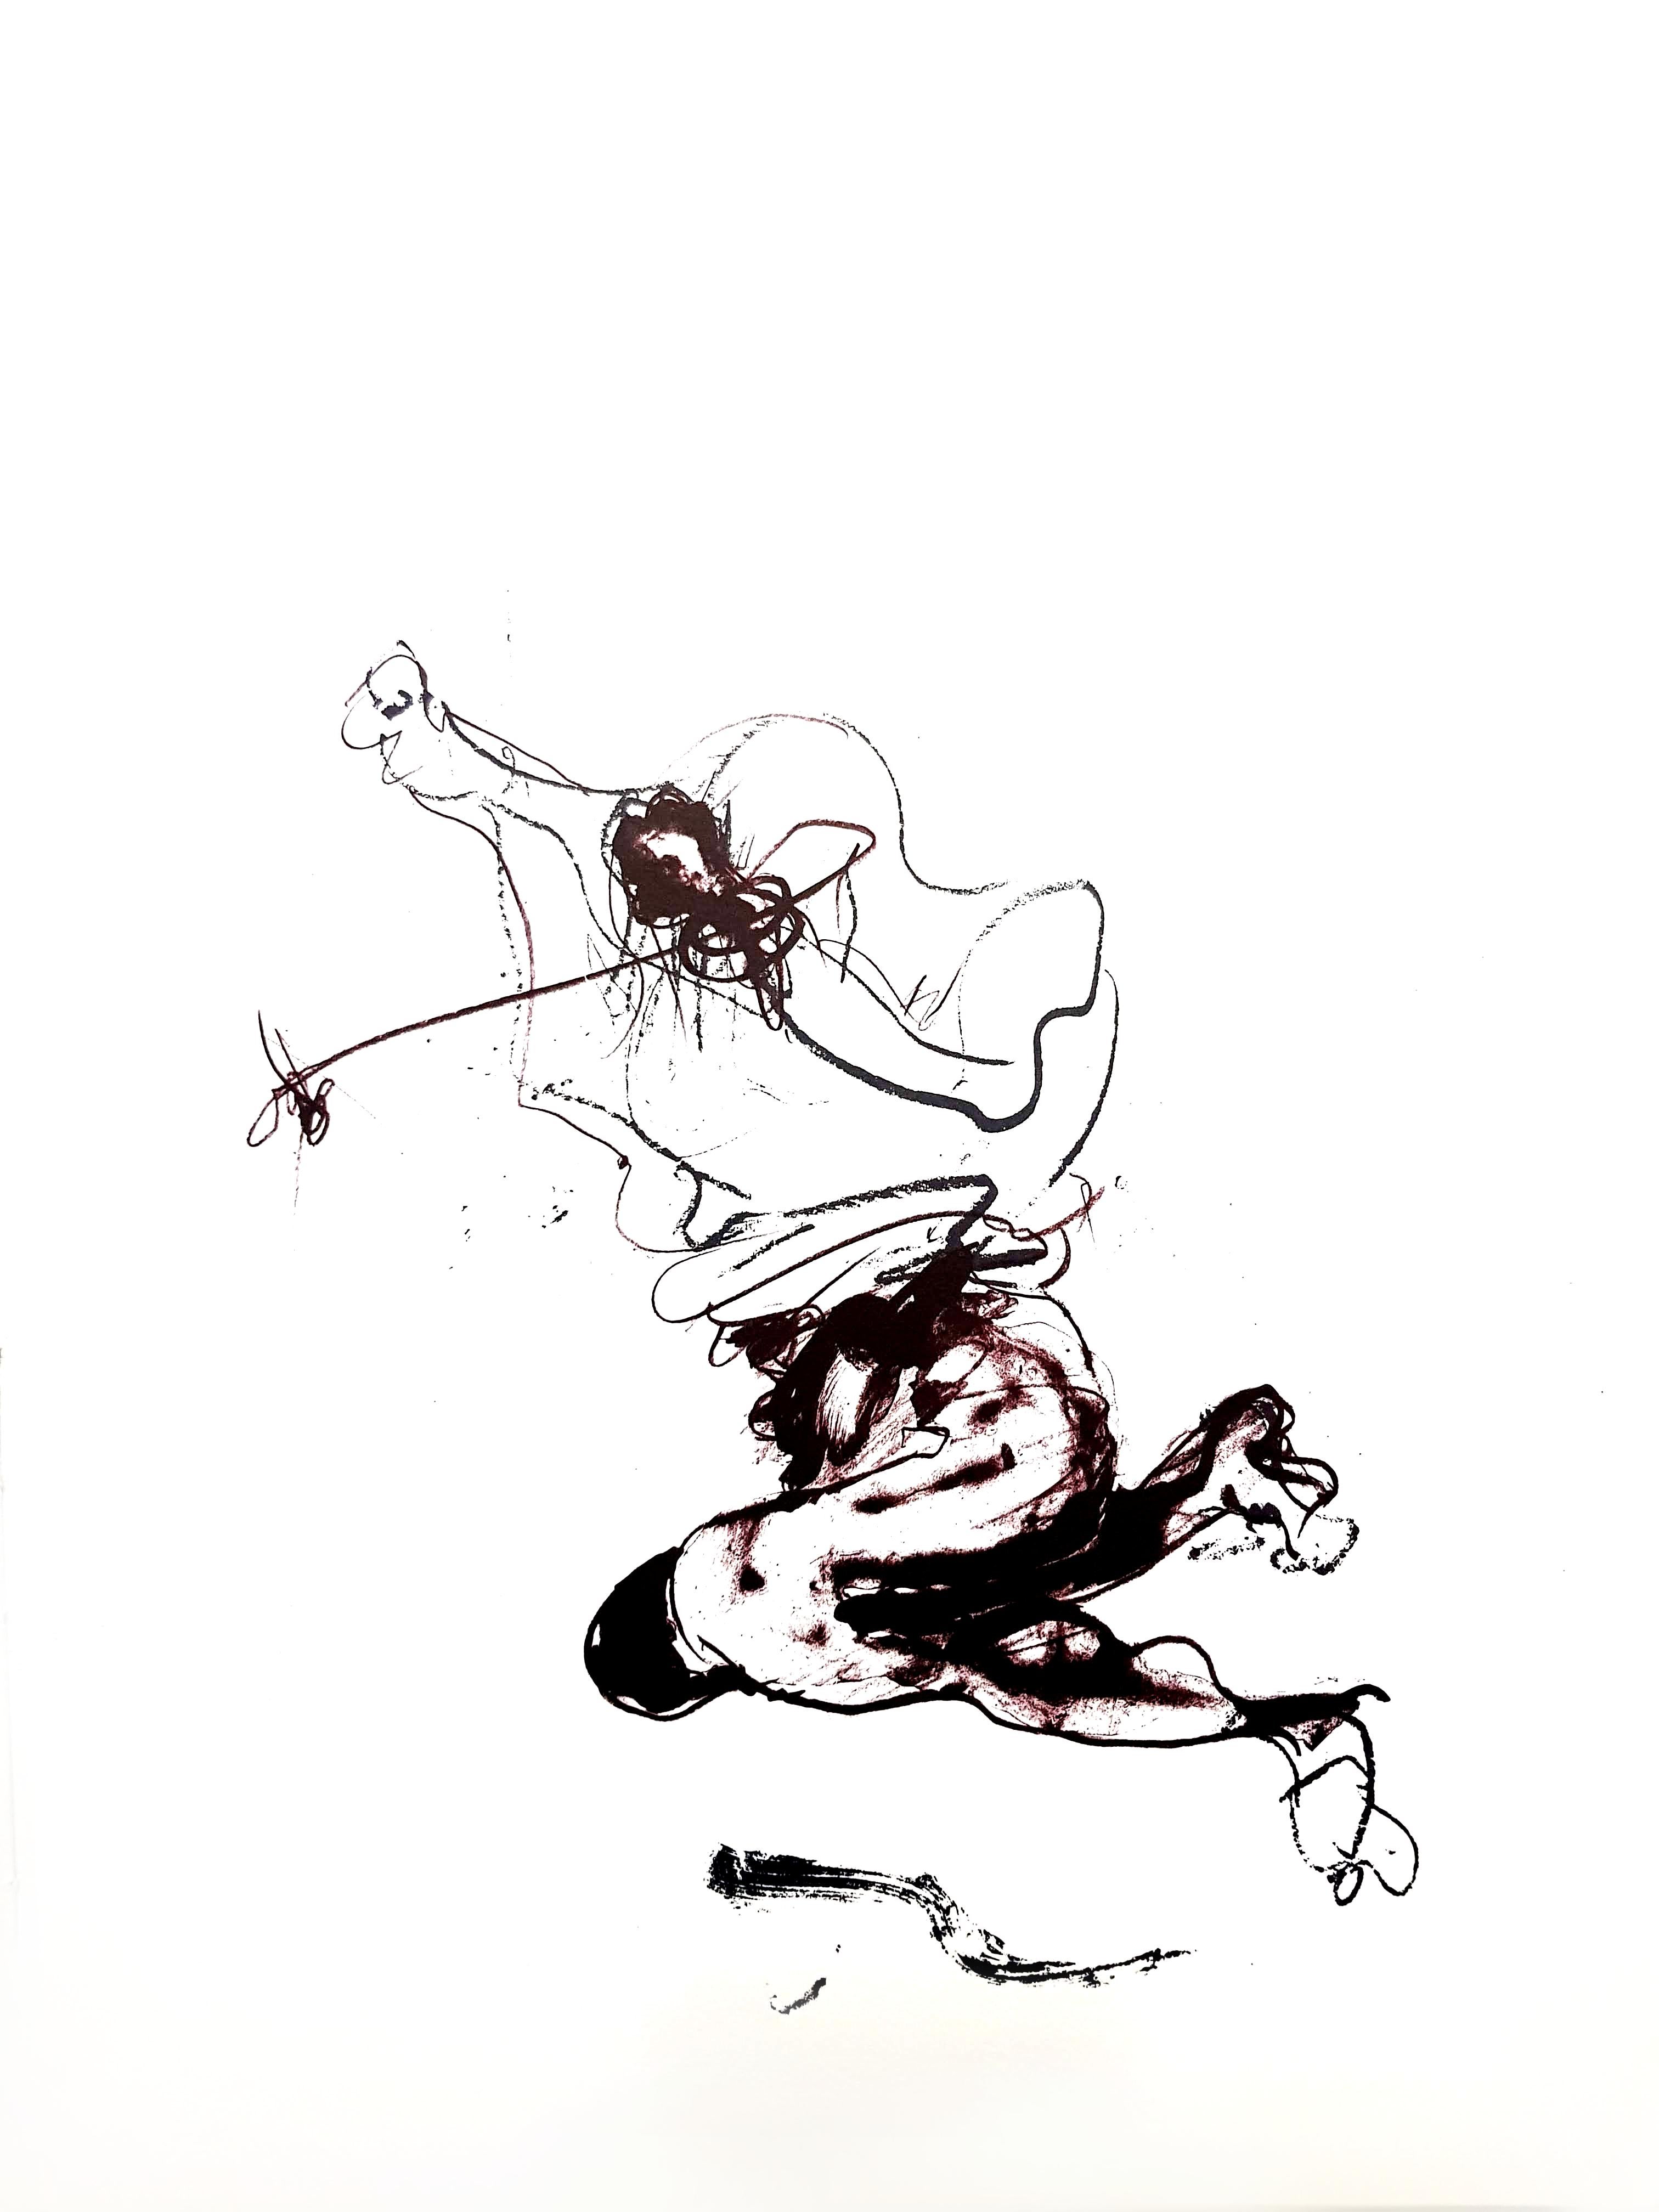 Pablo Palazuelo -  Lithographie originale
1976
Dimensions : 32 x 25 cm
Revue XXe Siècle 
Edition : Cahiers d'art publiés sous la direction de G. di San Lazzaro.

Paul Rebeyrolle (1926-2005) est né à Eymoutiers. Il est devenu l'un des peintres